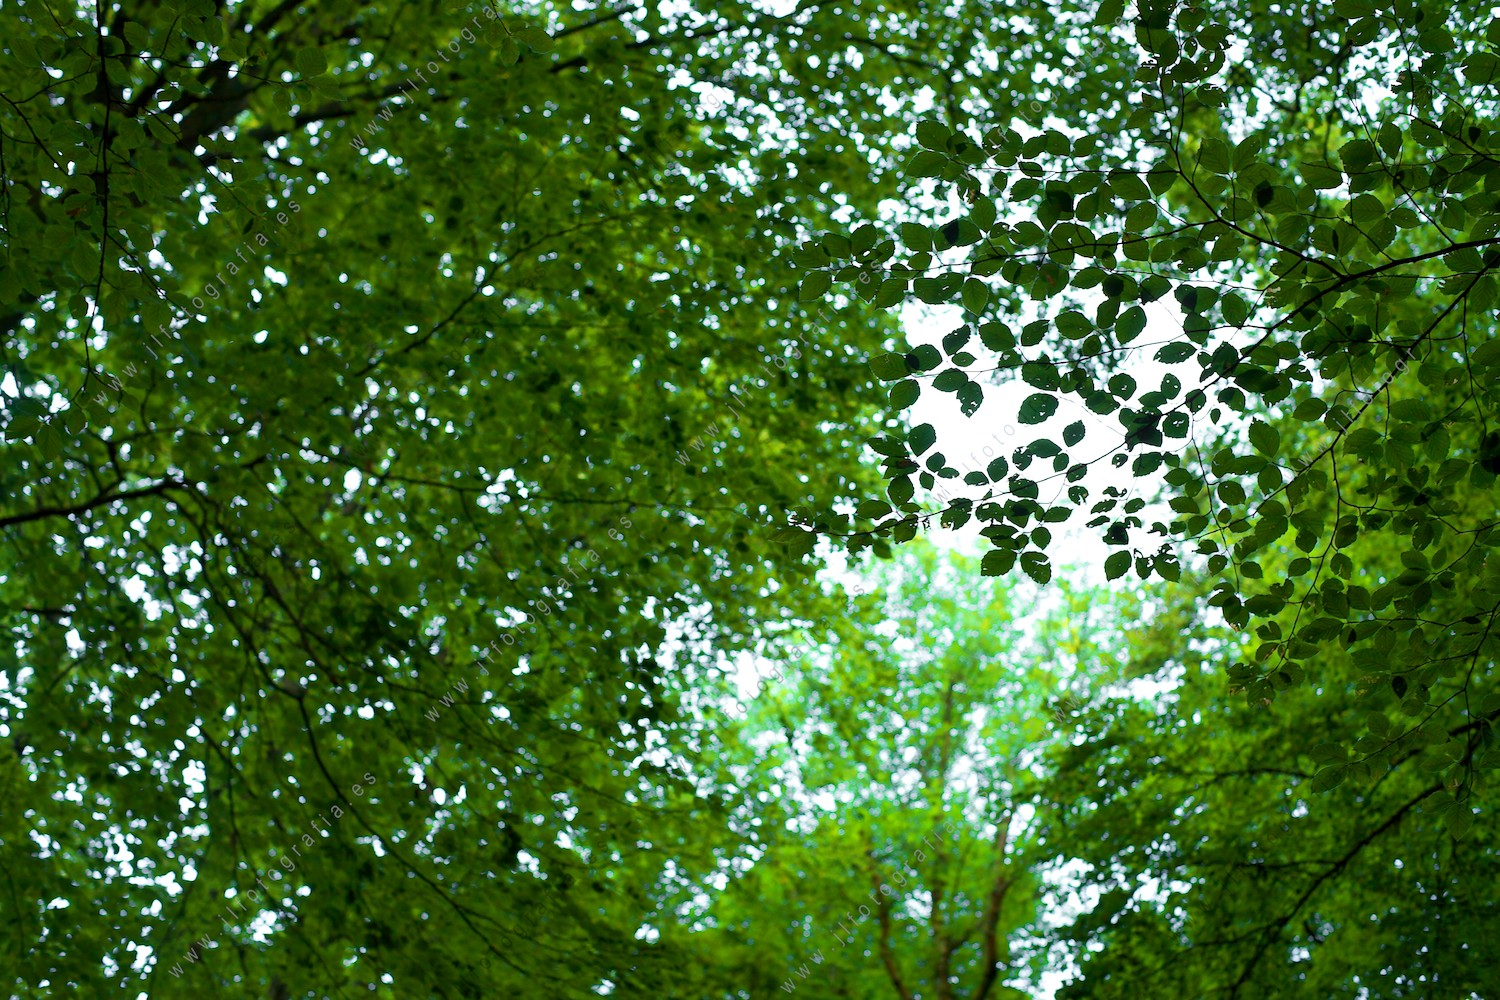 Detalle de hojas de árboles en el bosque con plano contrapicado.